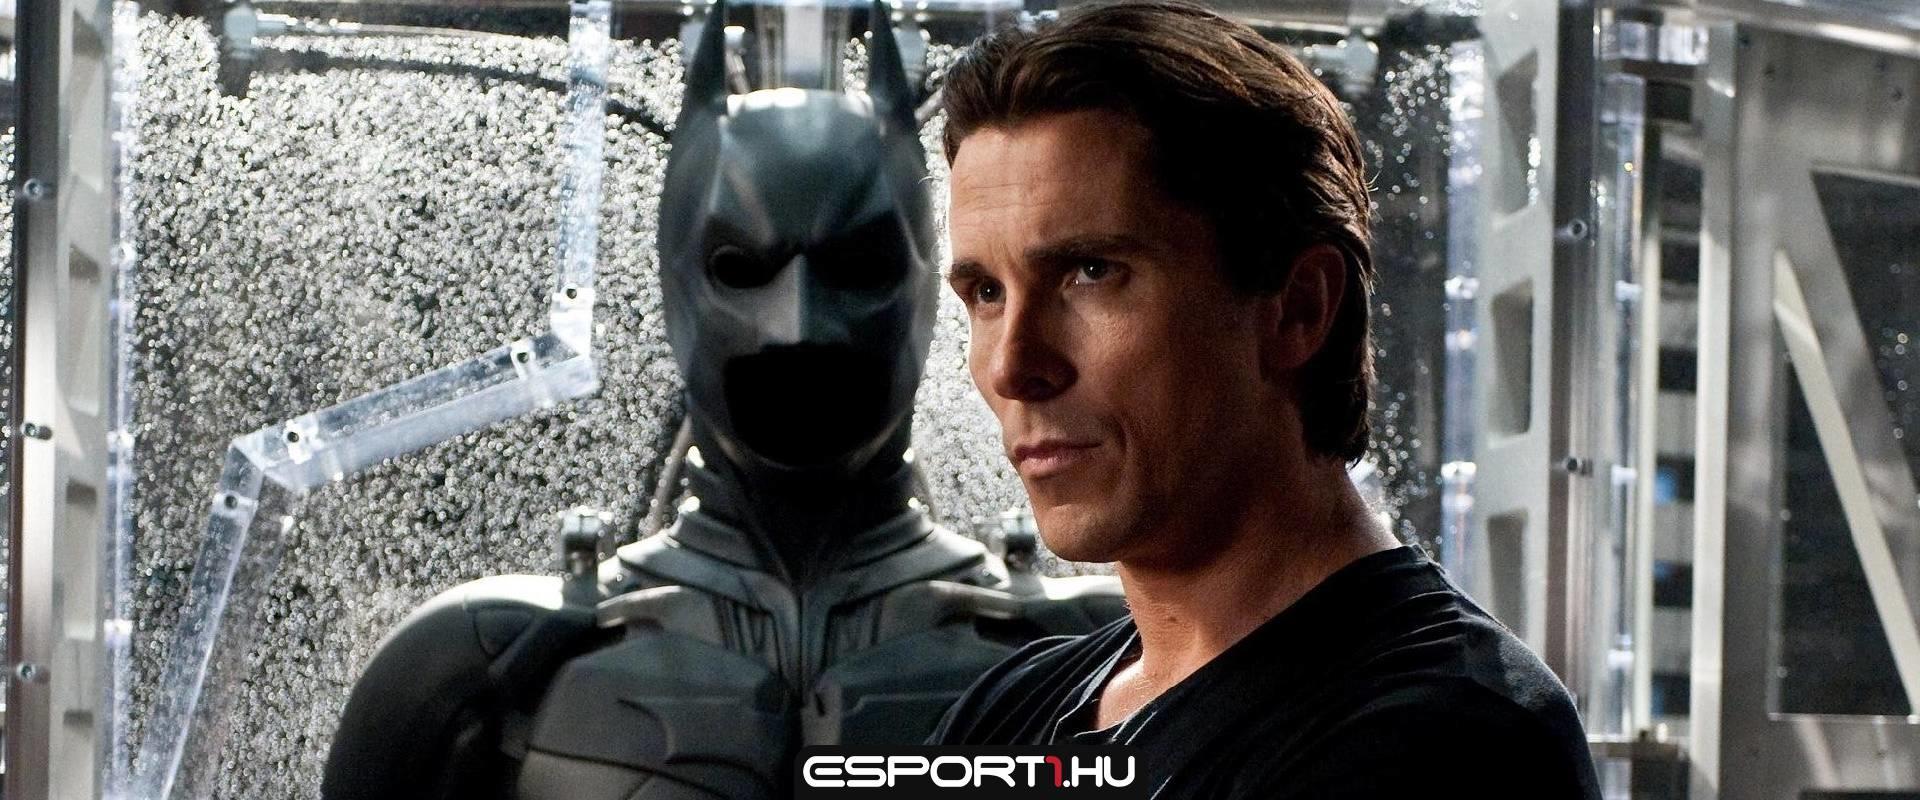 Christian Bale egy esetben újra magára öltené Batman szerepét